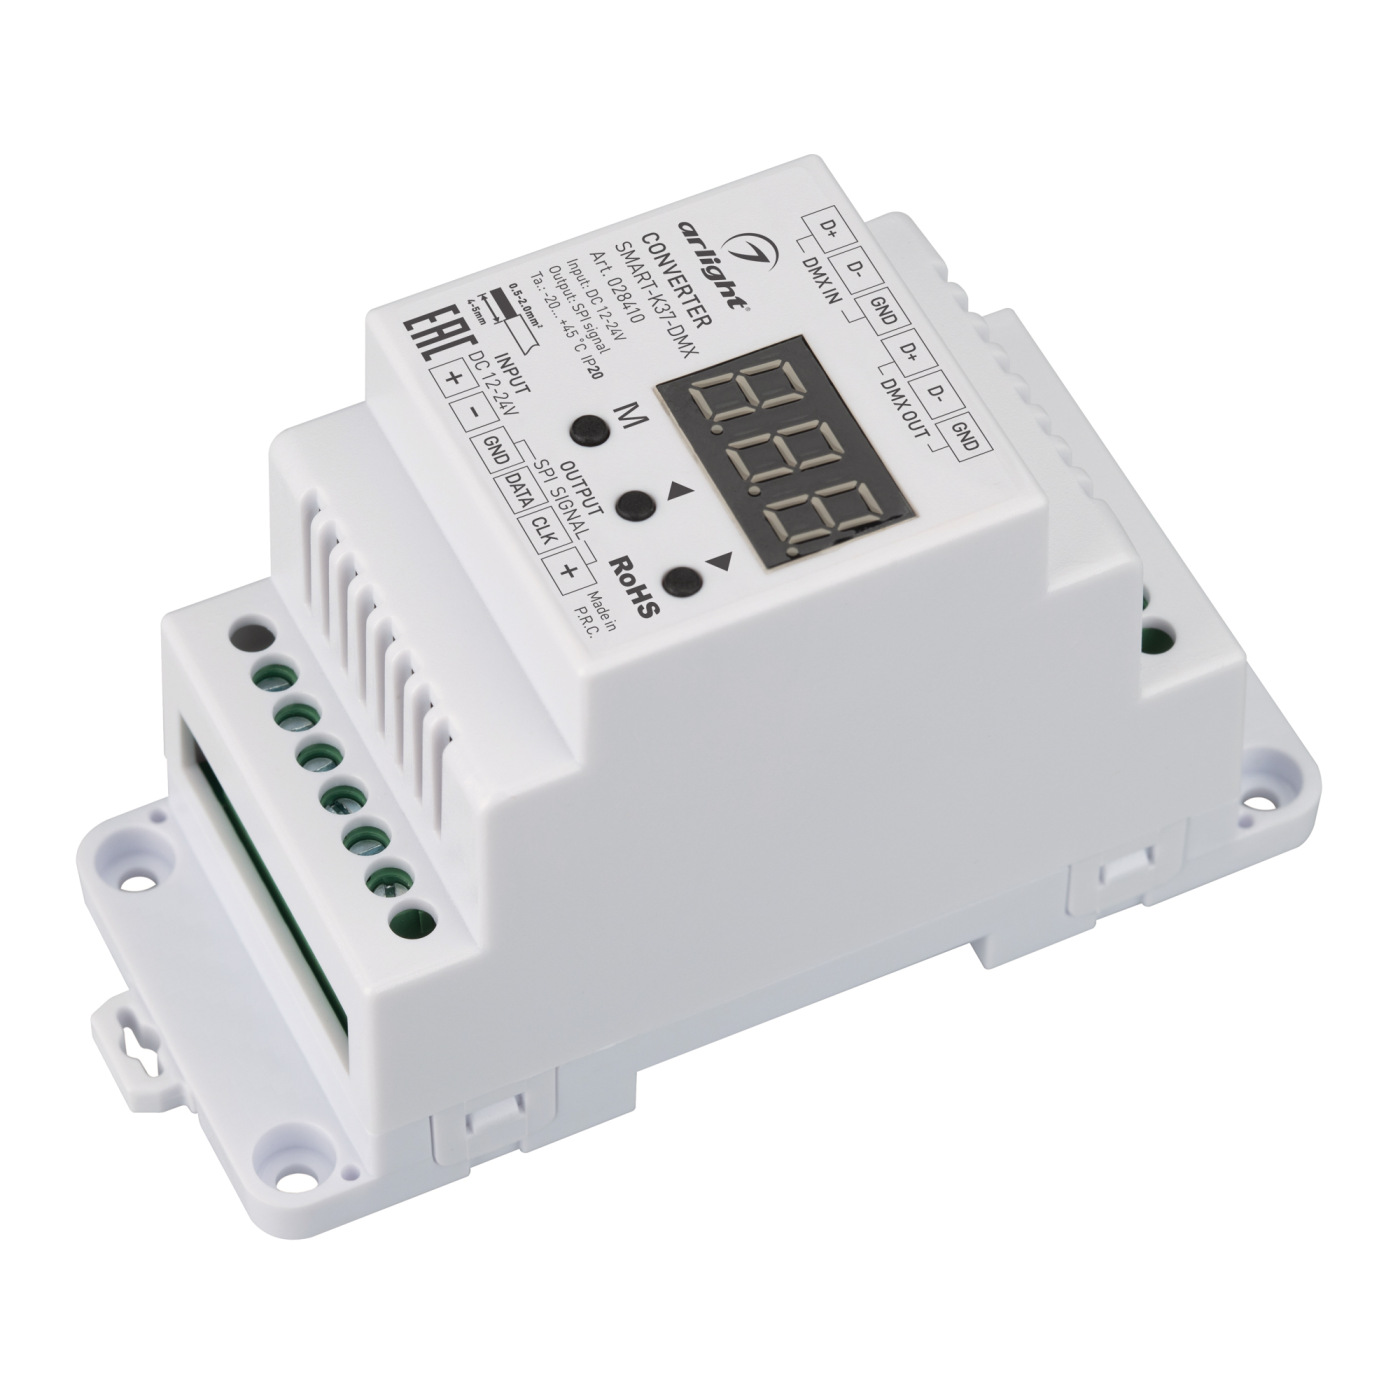 Конвертер SMART-K37-DMX (12-24V, SPI, DIN, 2.4G) (Arlight, Металл) usb smart charger с адаптером питания на 20 портов универсальной зарядной станции для семейного и офисного использования